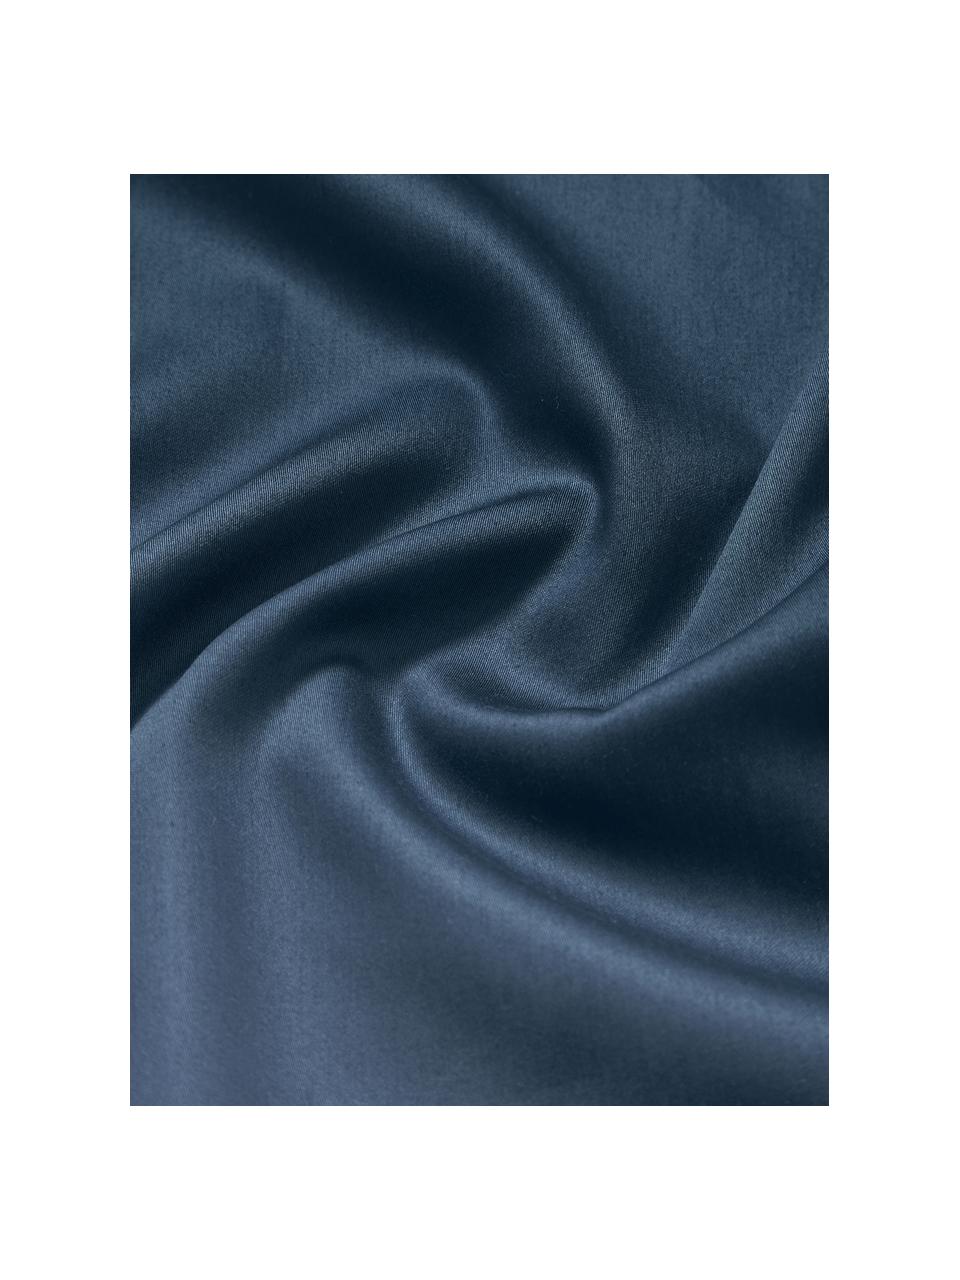 Poszwa na kołdrę z satyny bawełnianej Yuma, Niebieski, biały, szary, S 200 x D 200 cm